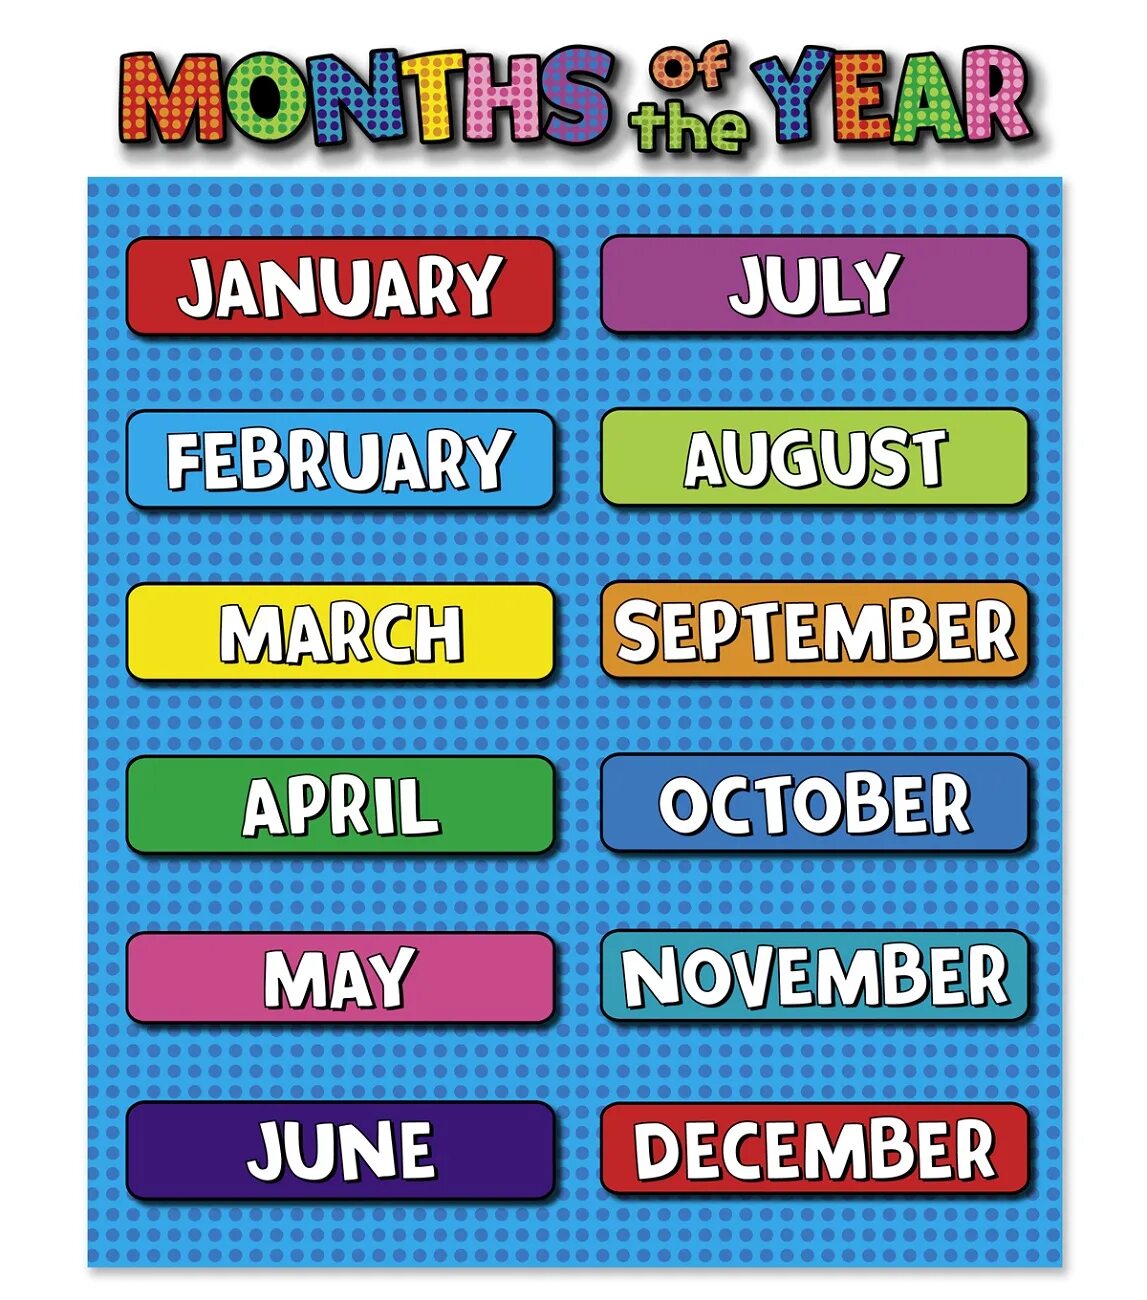 Months of the year. Month для детей. Месяца на английском. Месяцы для детей по английскому.